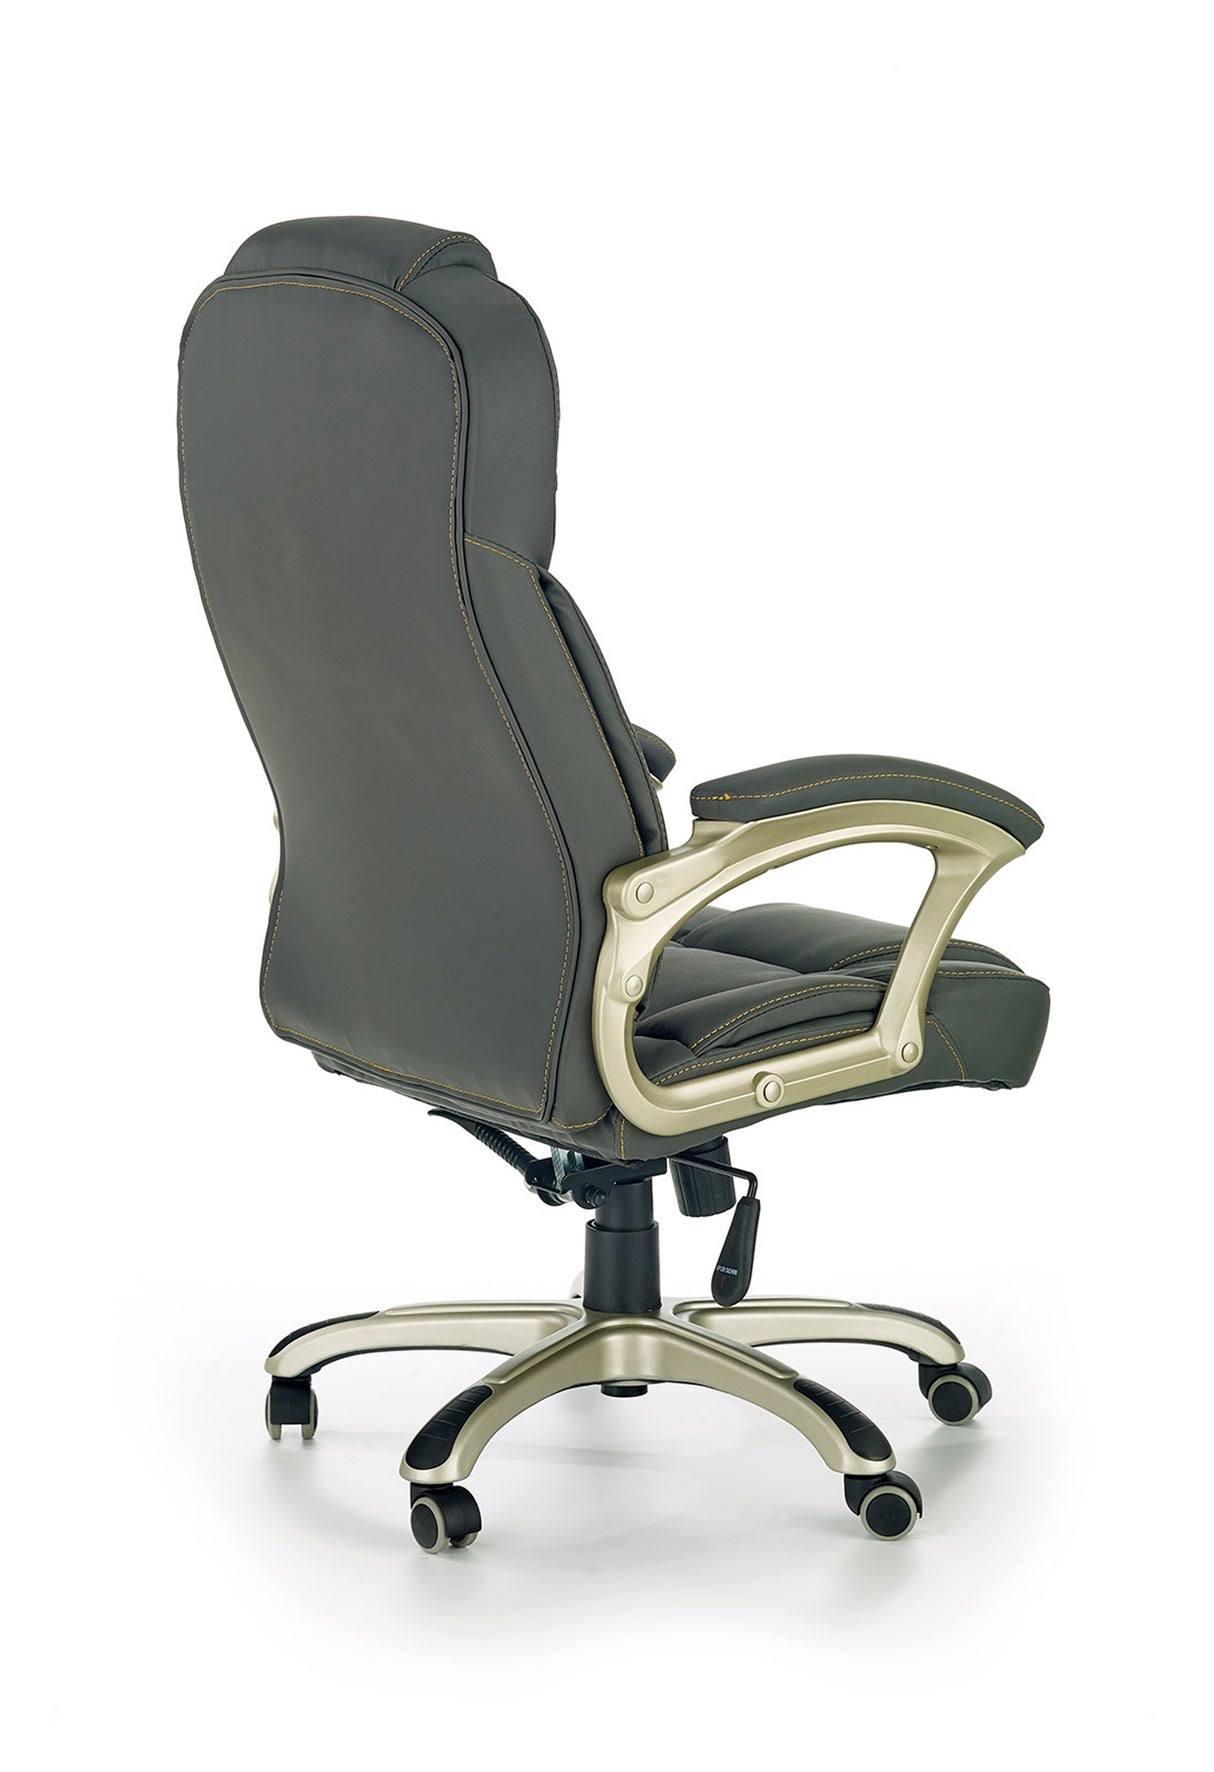 Office Chair HA2404